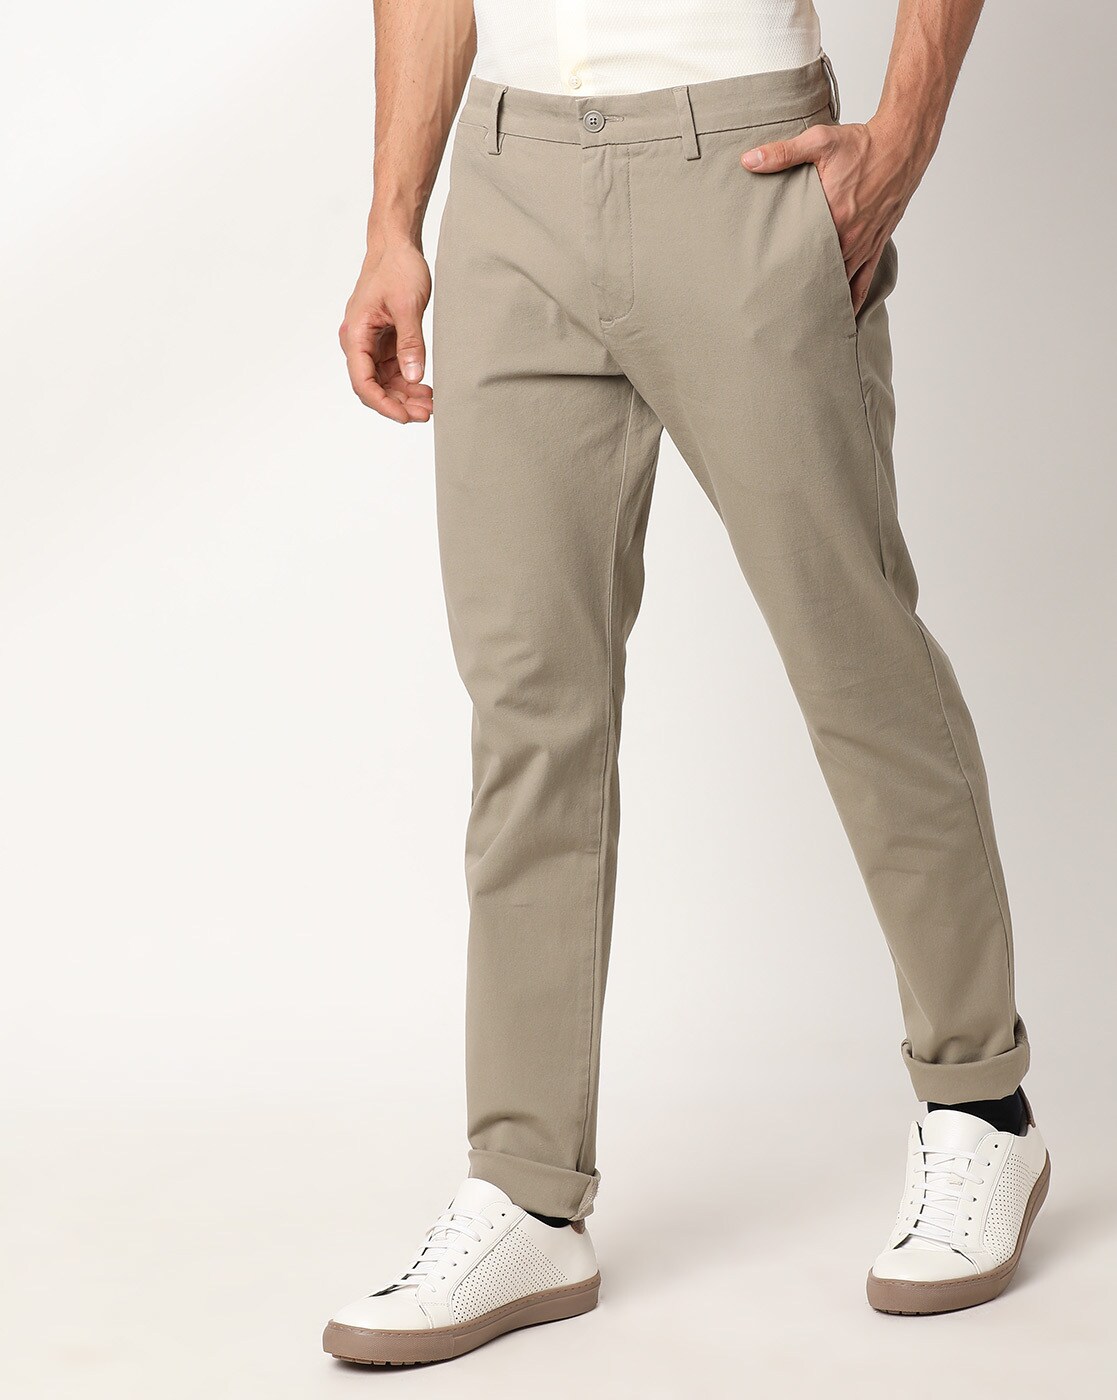 Levi's Pants & Jeans for Men | Costco